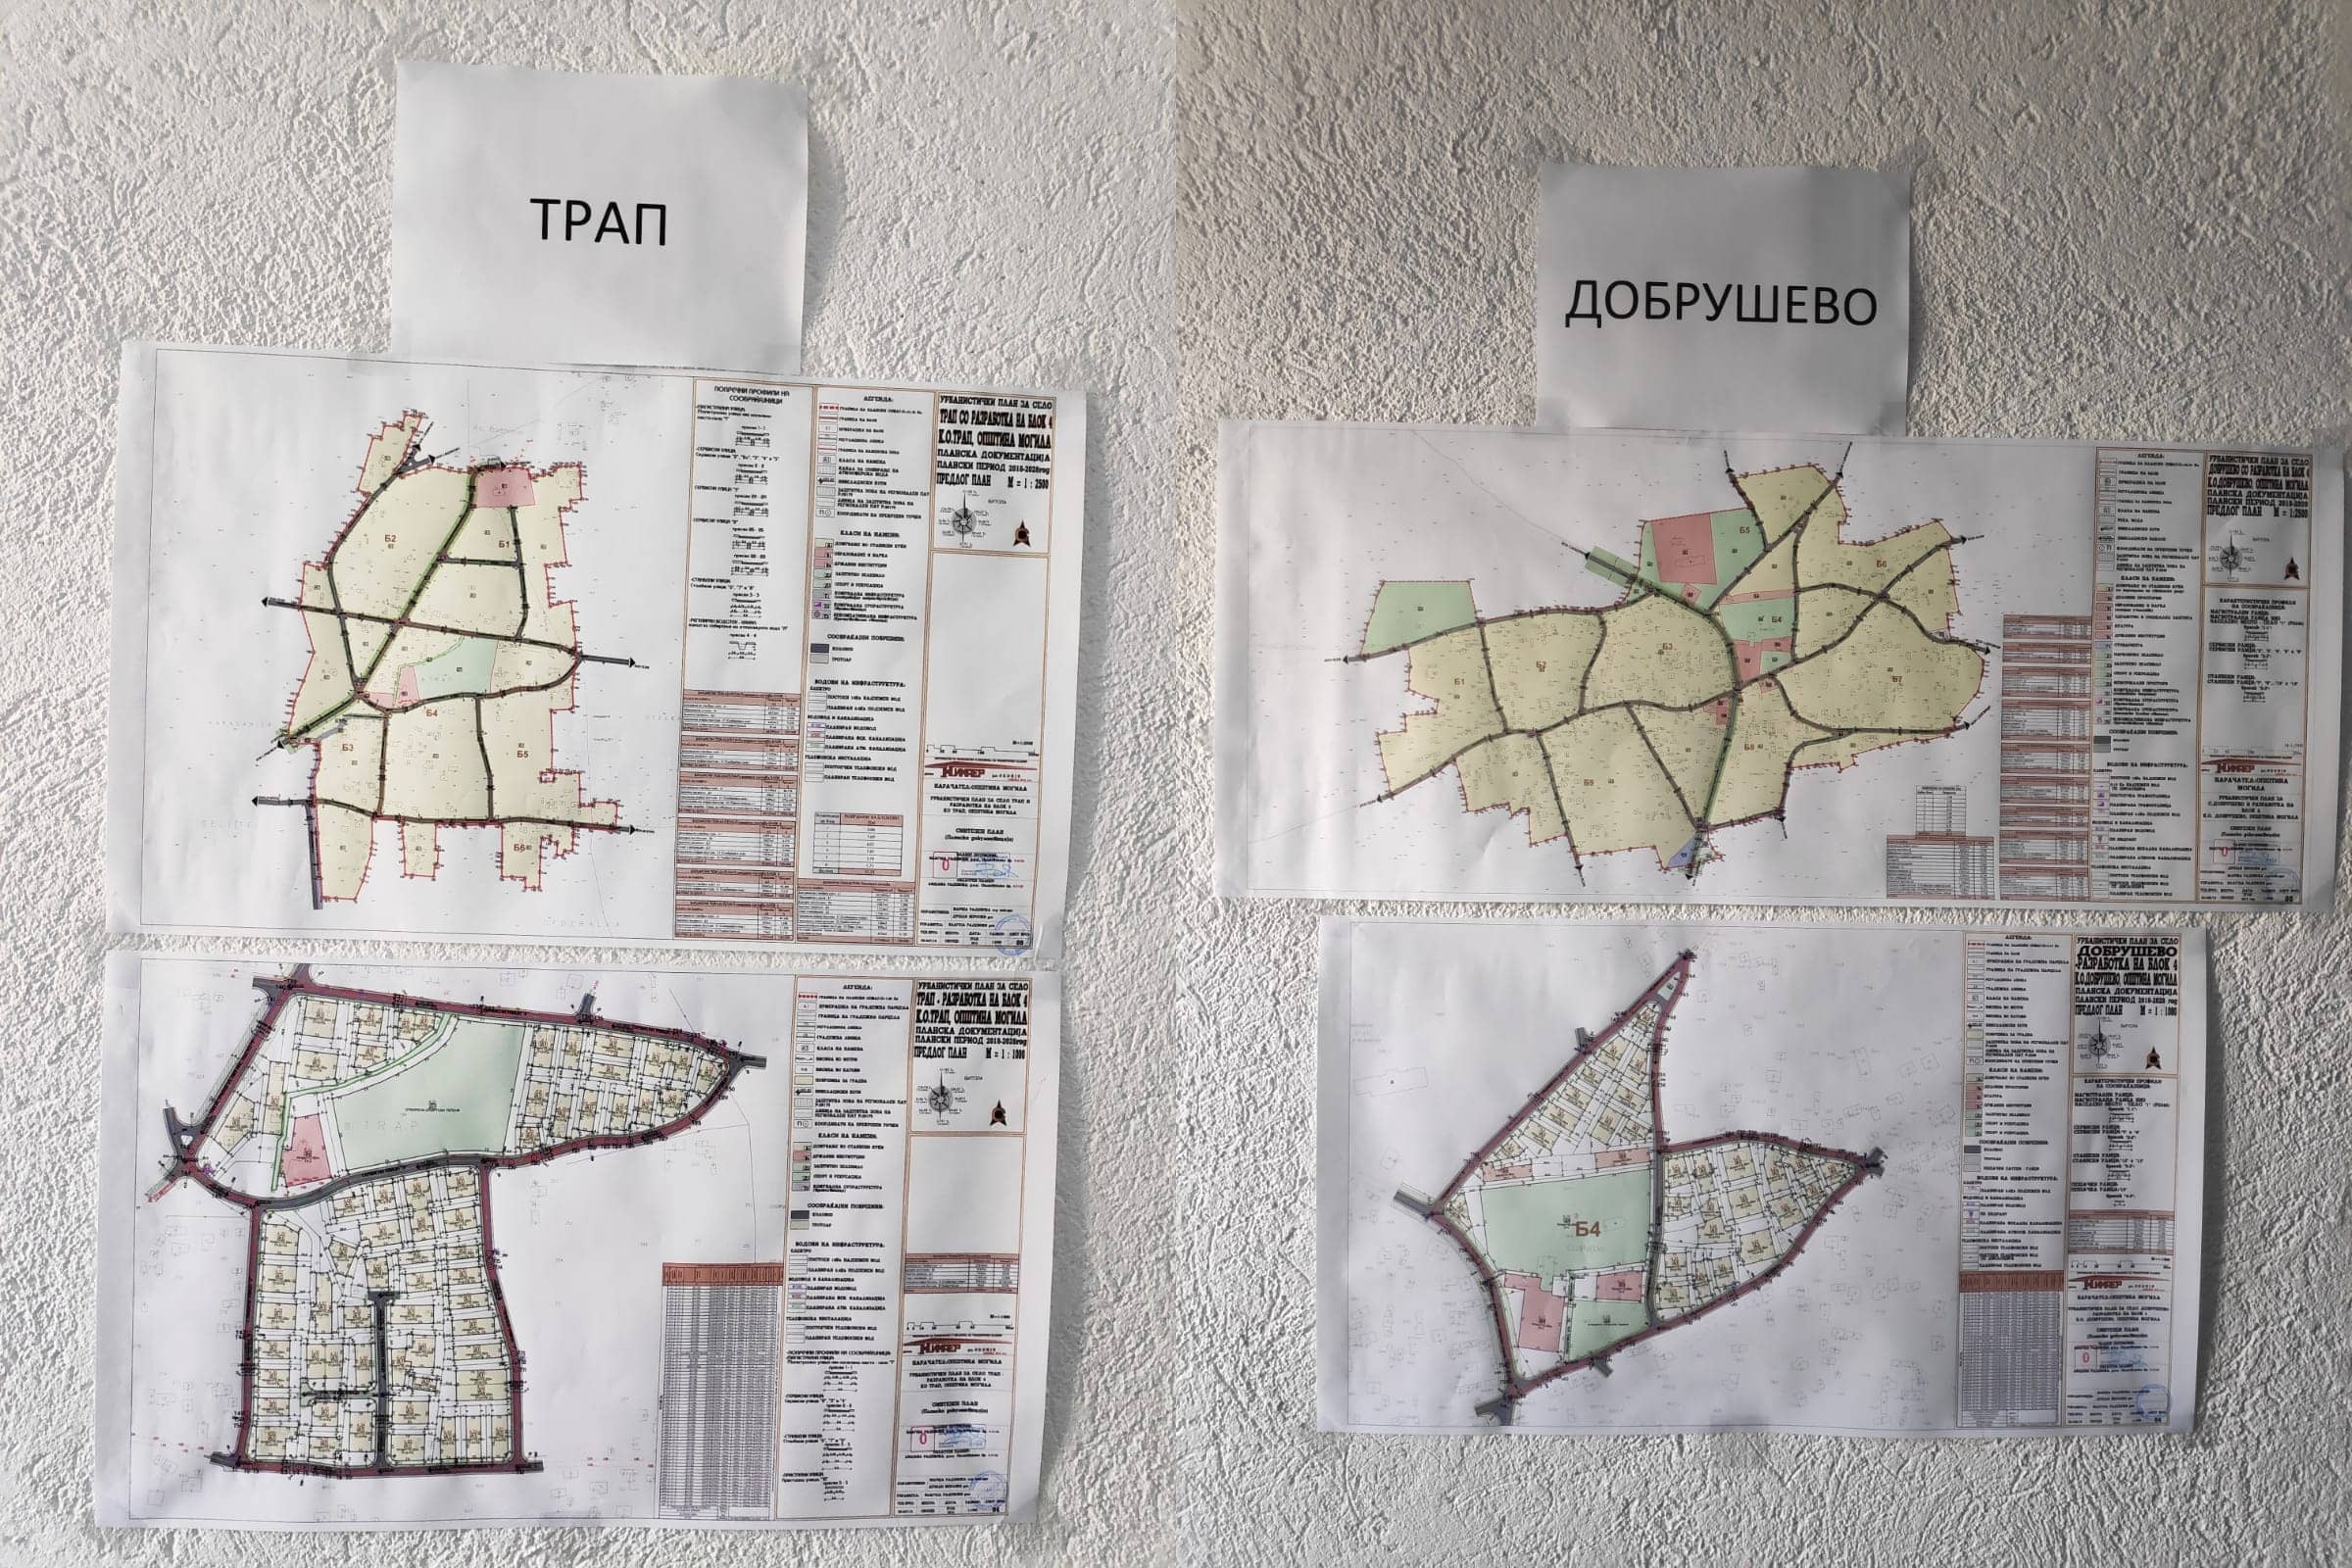 Нови урбанистички планови за Добрушево, Трап и Будаково